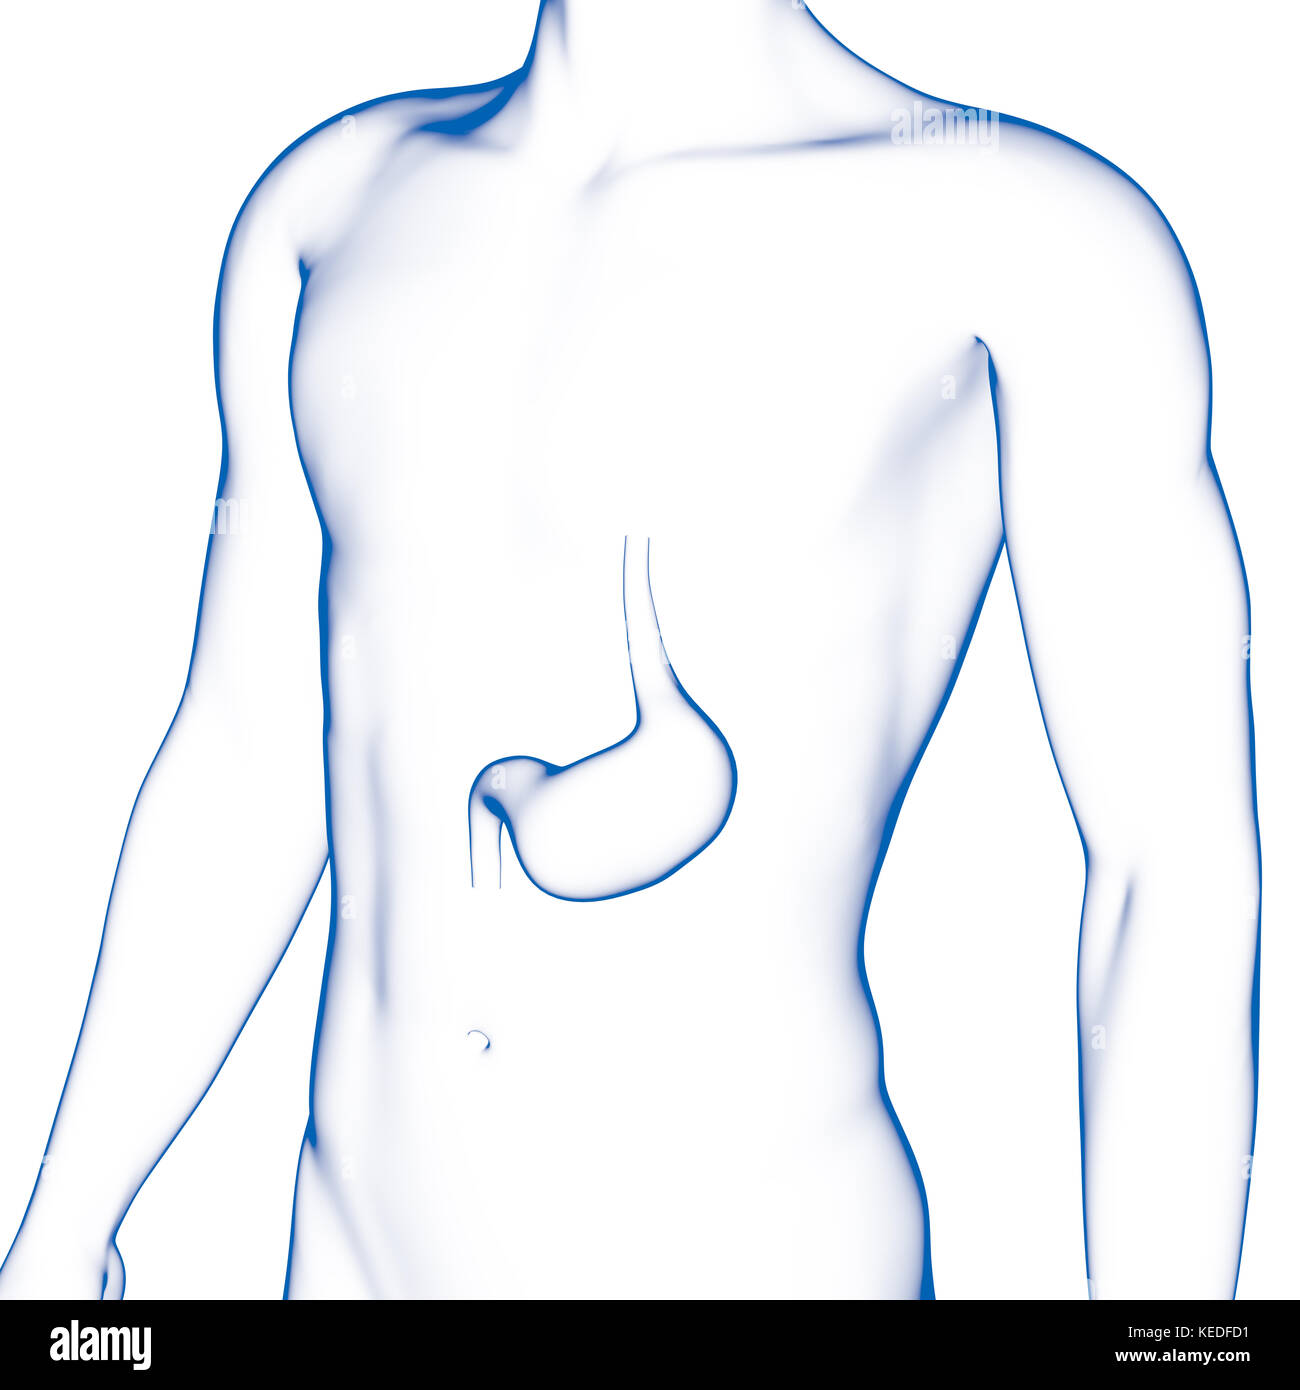 Les droits de l'estomac, illustration médicale Banque D'Images